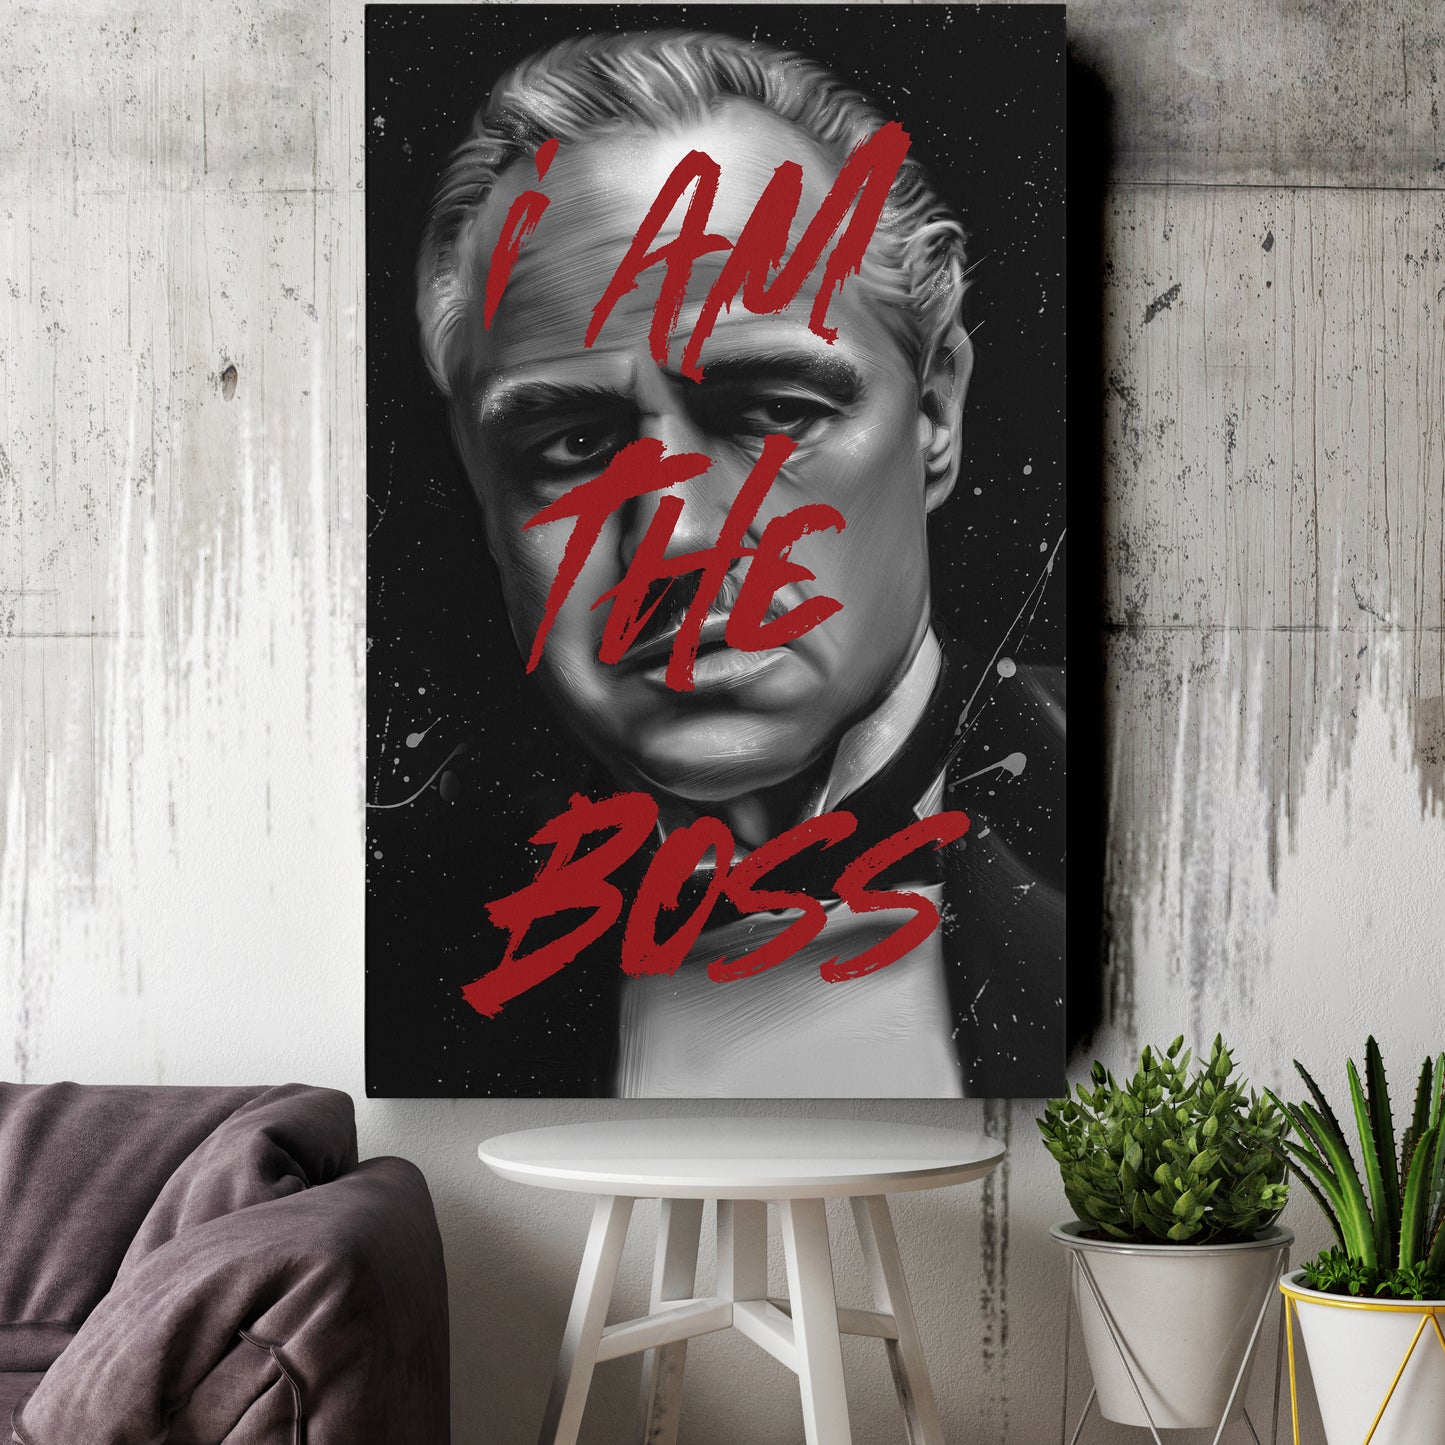 Vito Corleone 'I am The Boss'